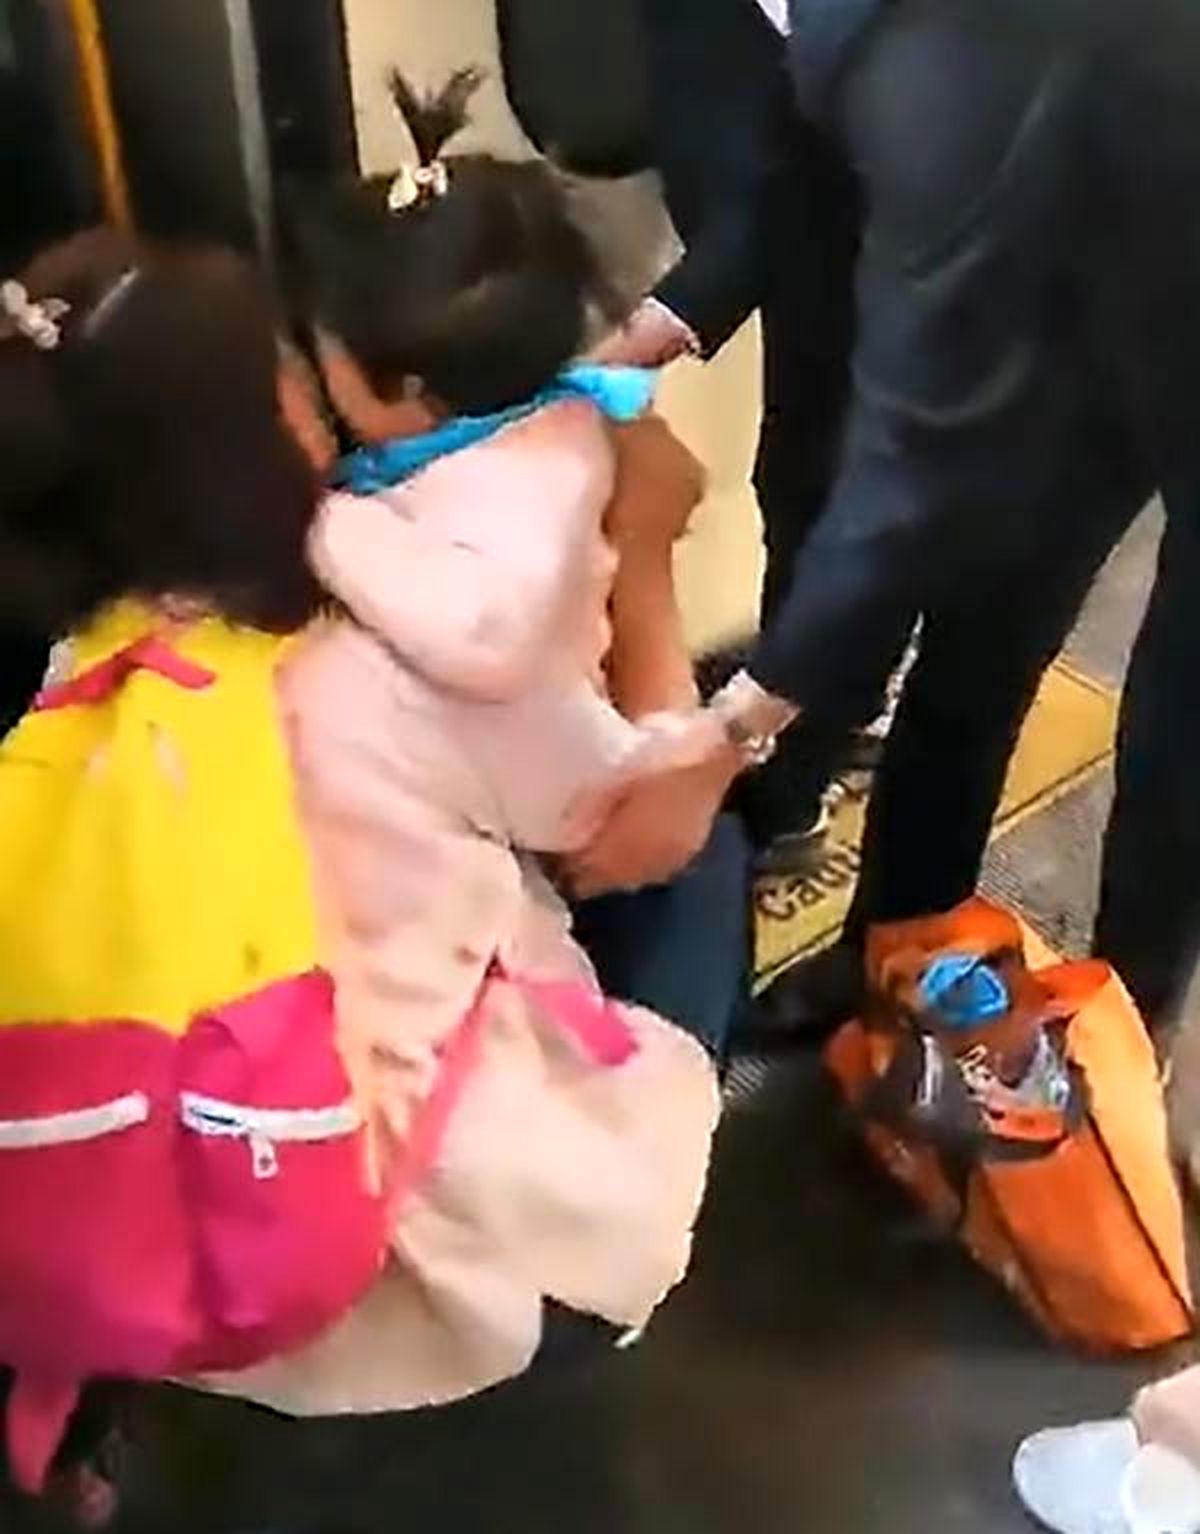 افتادن هولناک کودک زیر قطار مترو حین گوشی بازی مادر!+ عکس